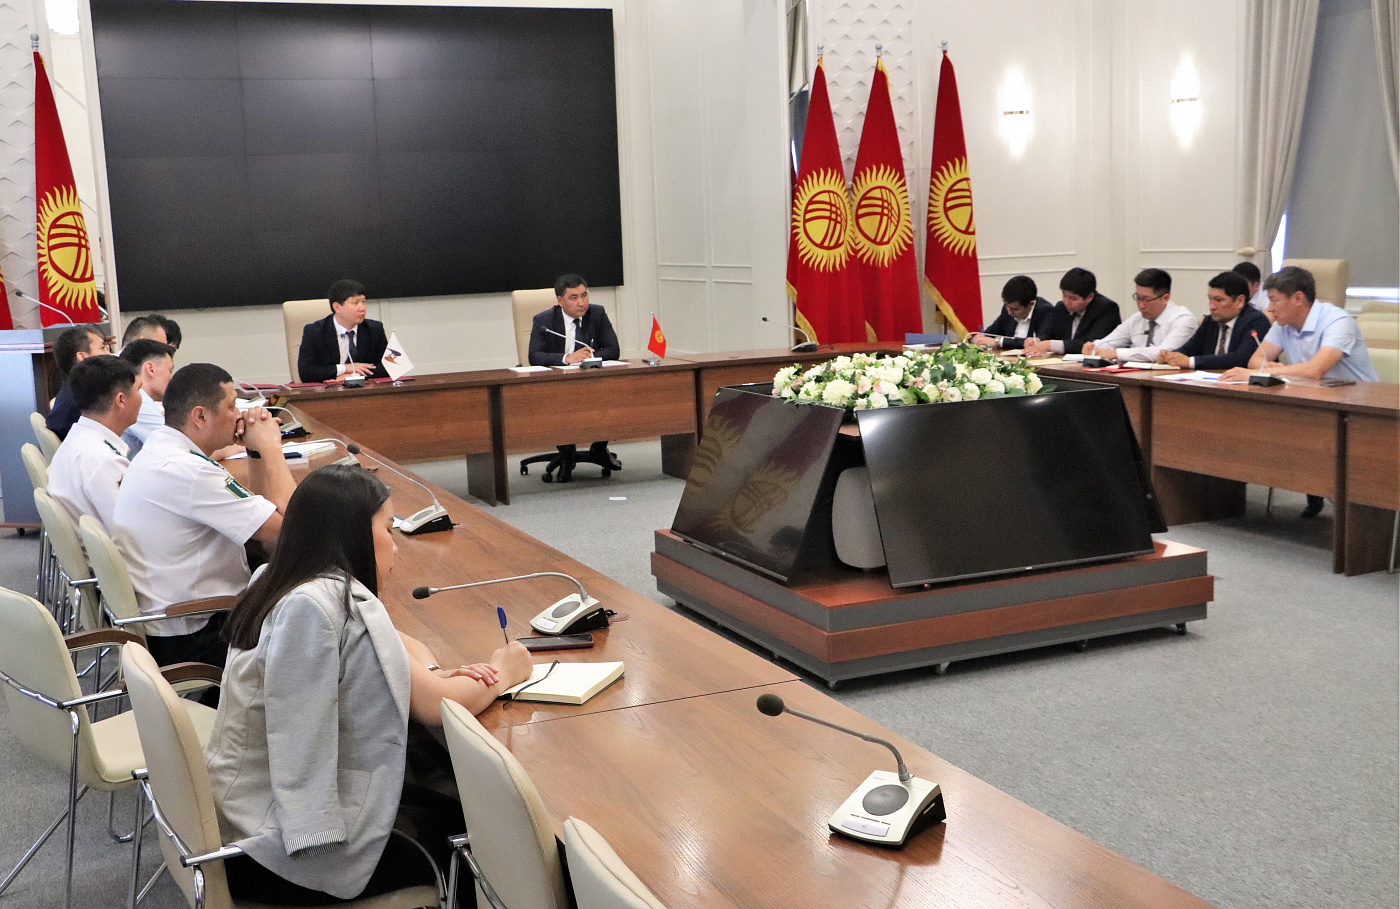 Стороны затронули вопросы, связанные с применением навигационных пломб в Кыргызстане, а также роль единого окна в части предоставления электронных разрешительных документов.